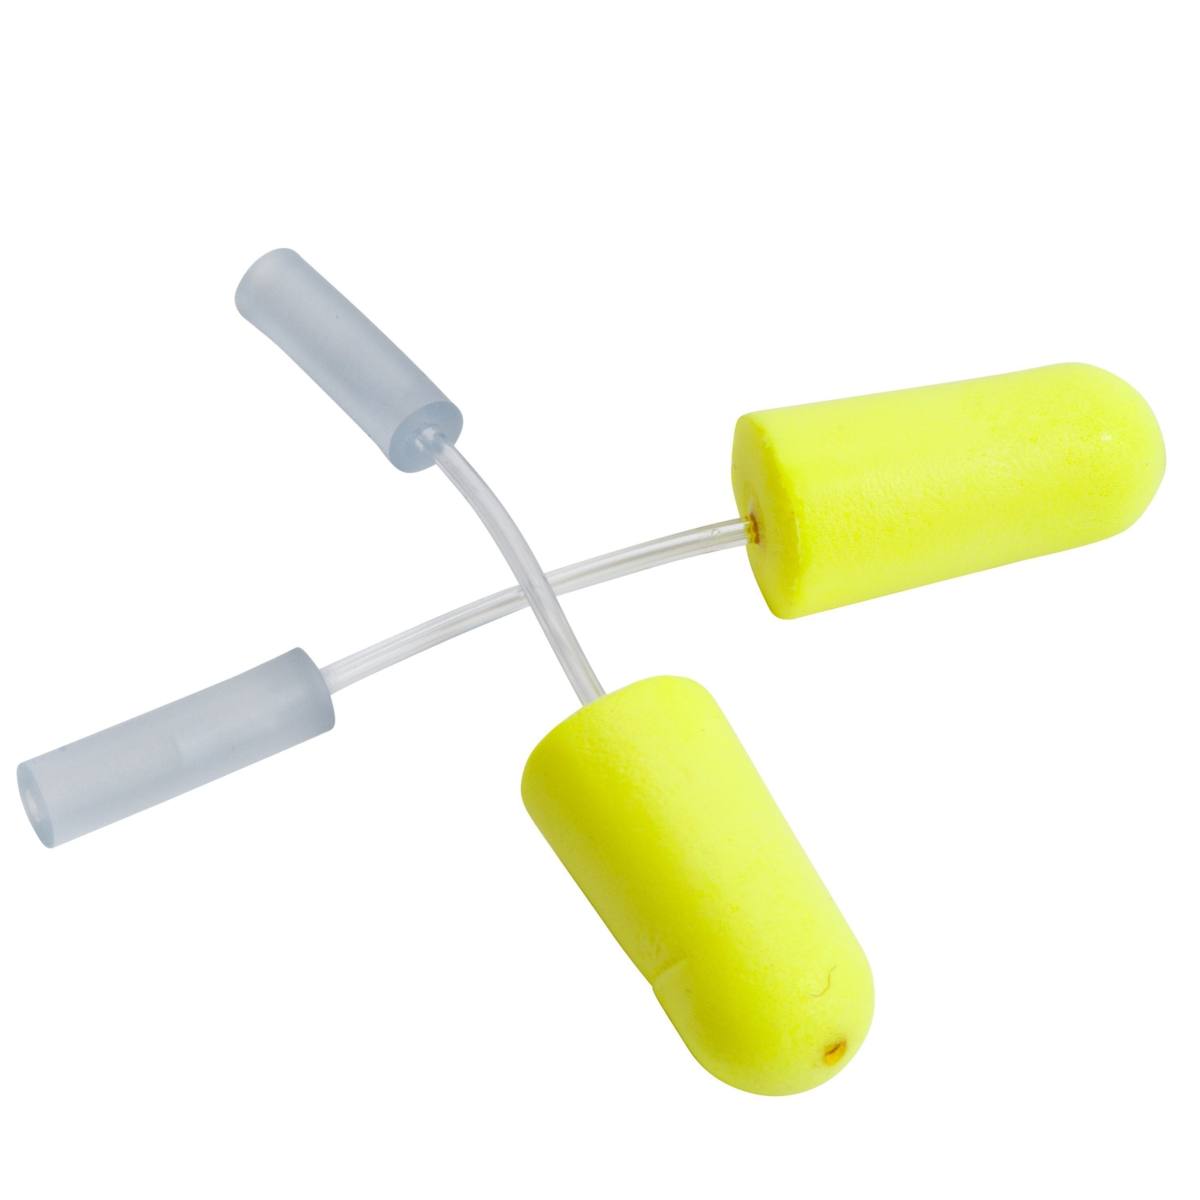 tappi auricolari 3M E-A-R E-A-Rsoft giallo neon per test di adattamento, 393-2000-50